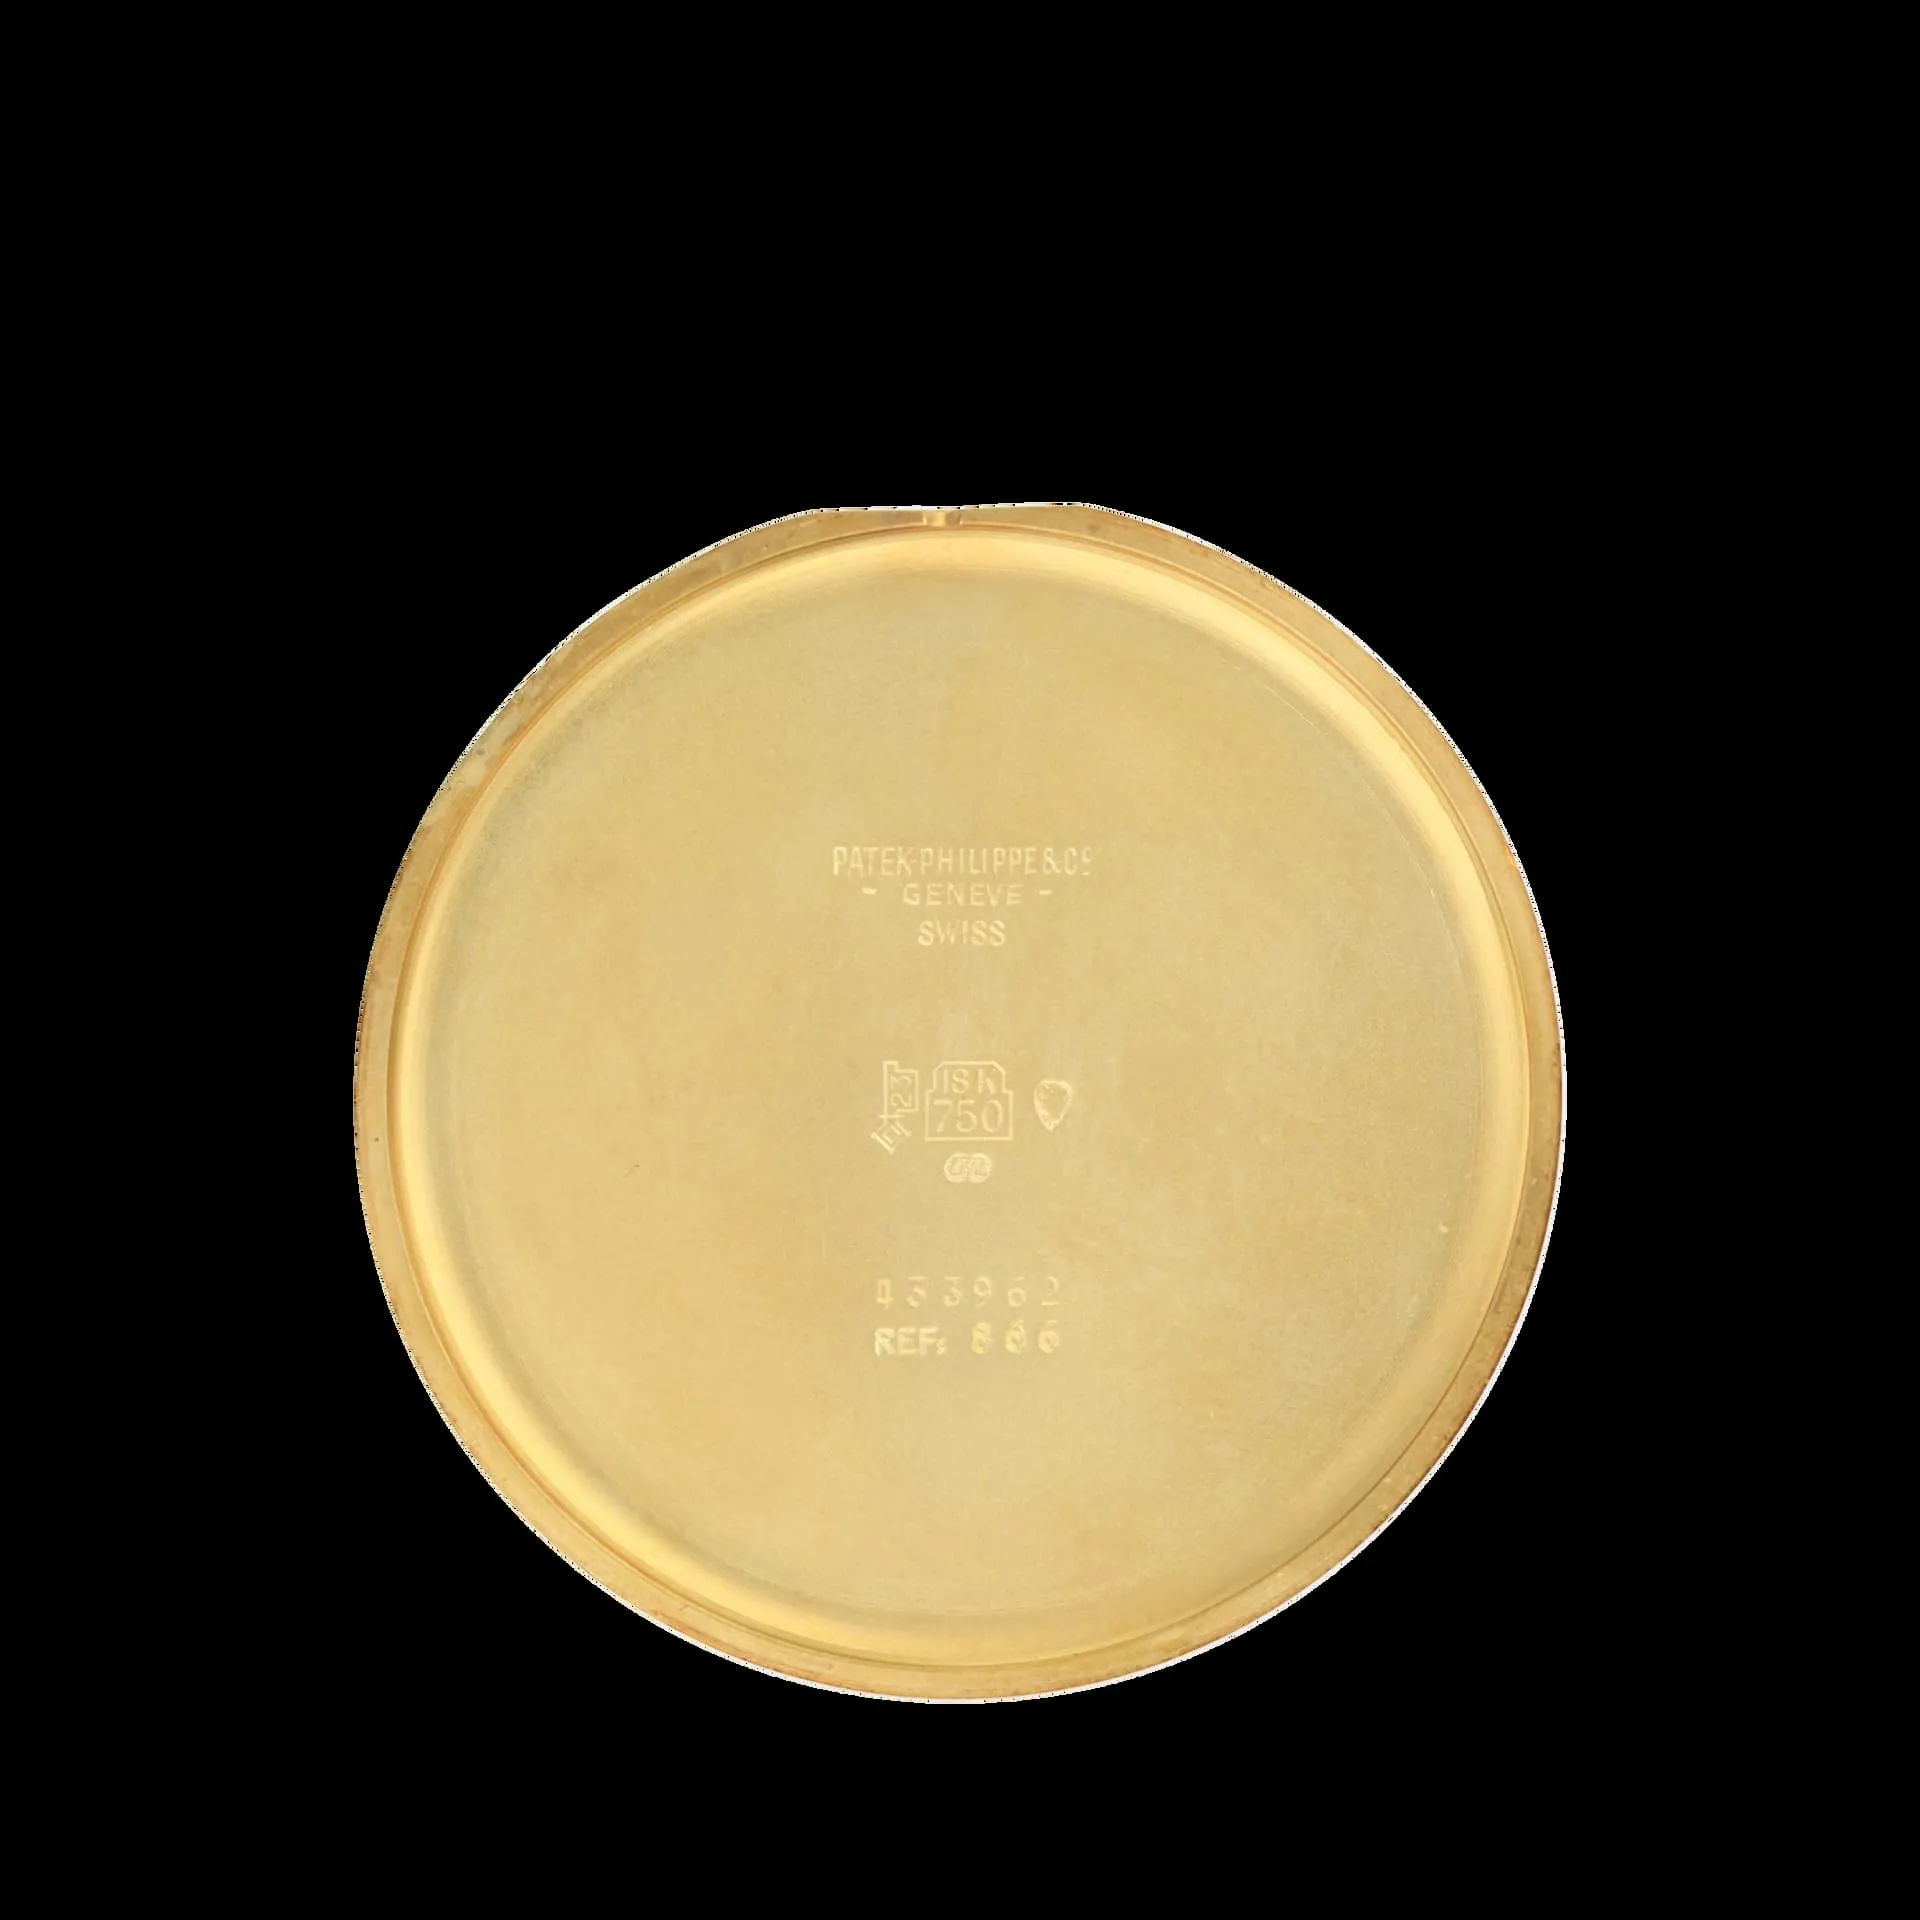 Patek Philippe 866 47.5mm Yellow gold White 2